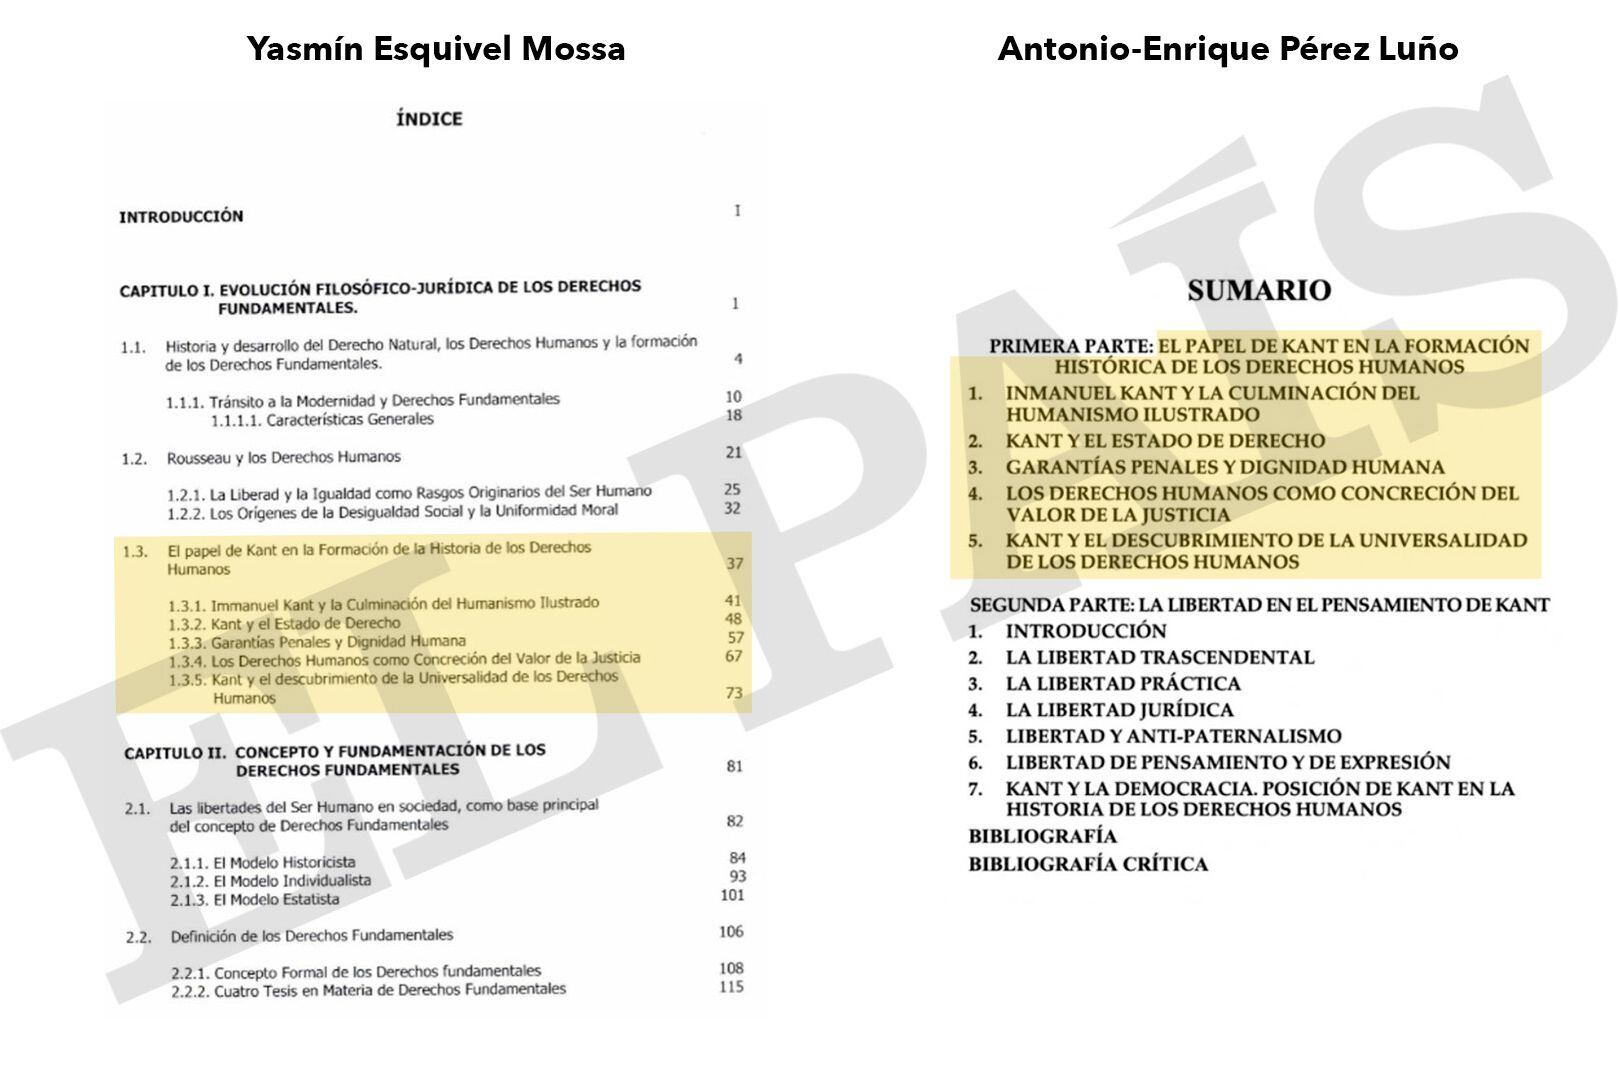 Del lado izquierdo, el índice de la tesis de Esquivel; del derecho, el índice del ensayo de Pérez Luño publicado en 'Historia de los derechos fundamentales'.